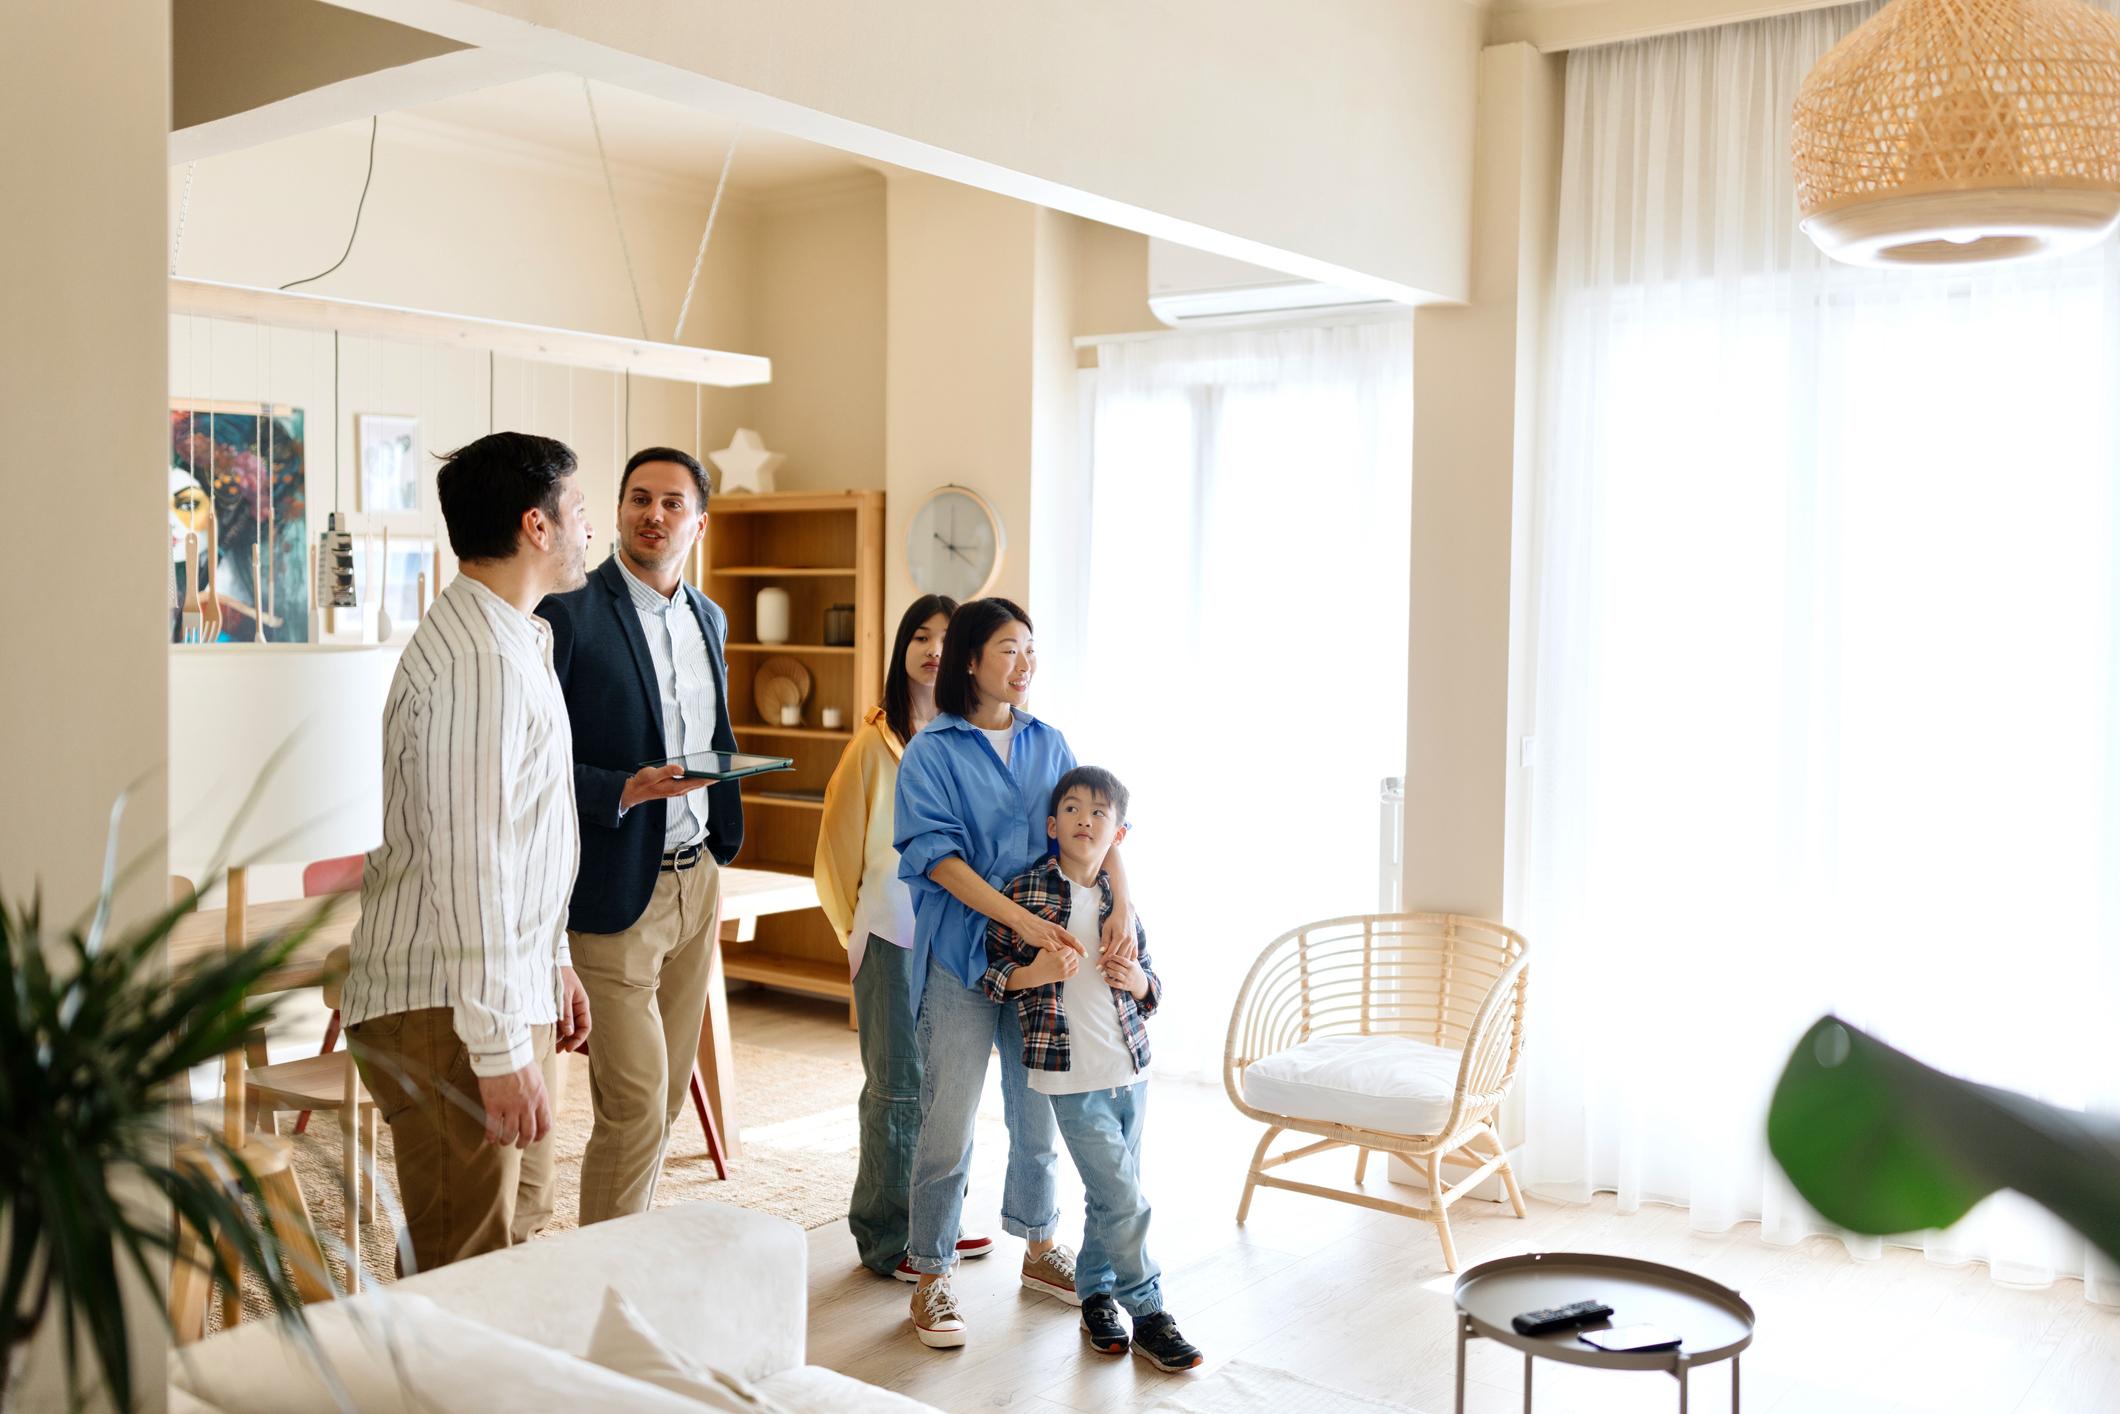 Eigentumswohnung verkaufen: Tipps für den Wohnungsverkauf